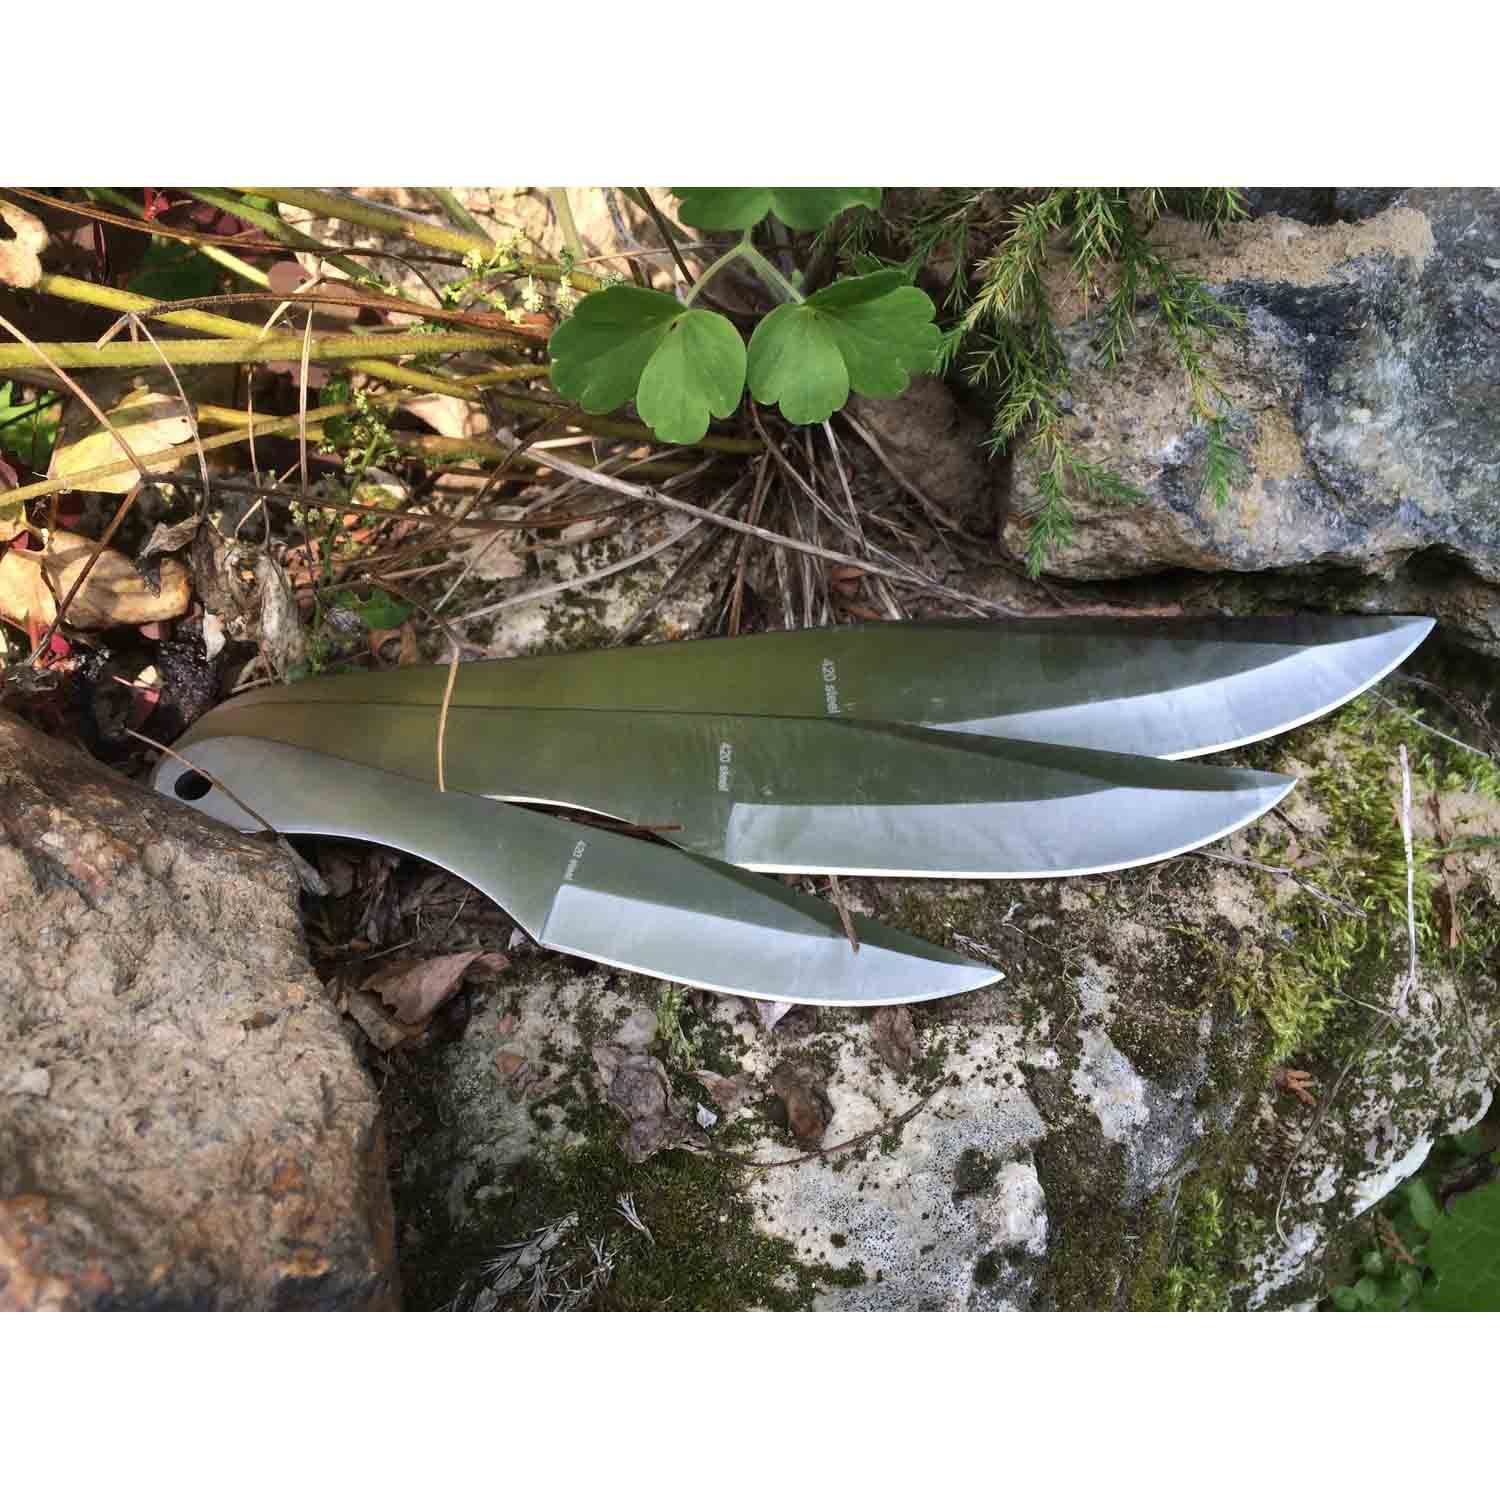 Метательные ножи M011-3, Viking Nordway